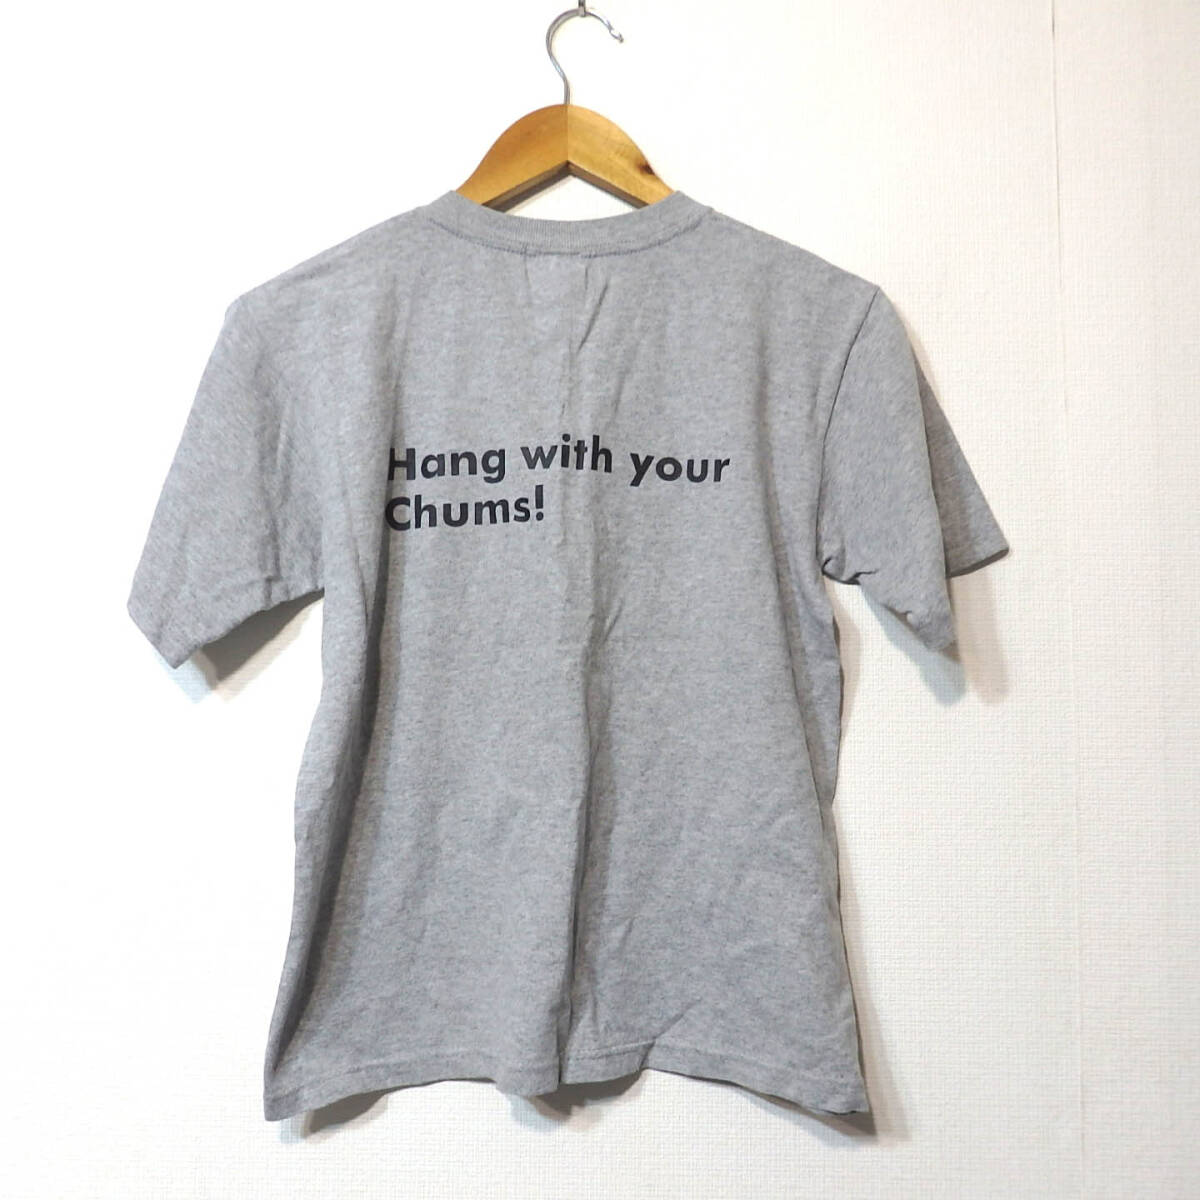 [ бесплатная доставка ] Chums футболка /CHUMS YOUTH L размер ( женский M размер соответствует )